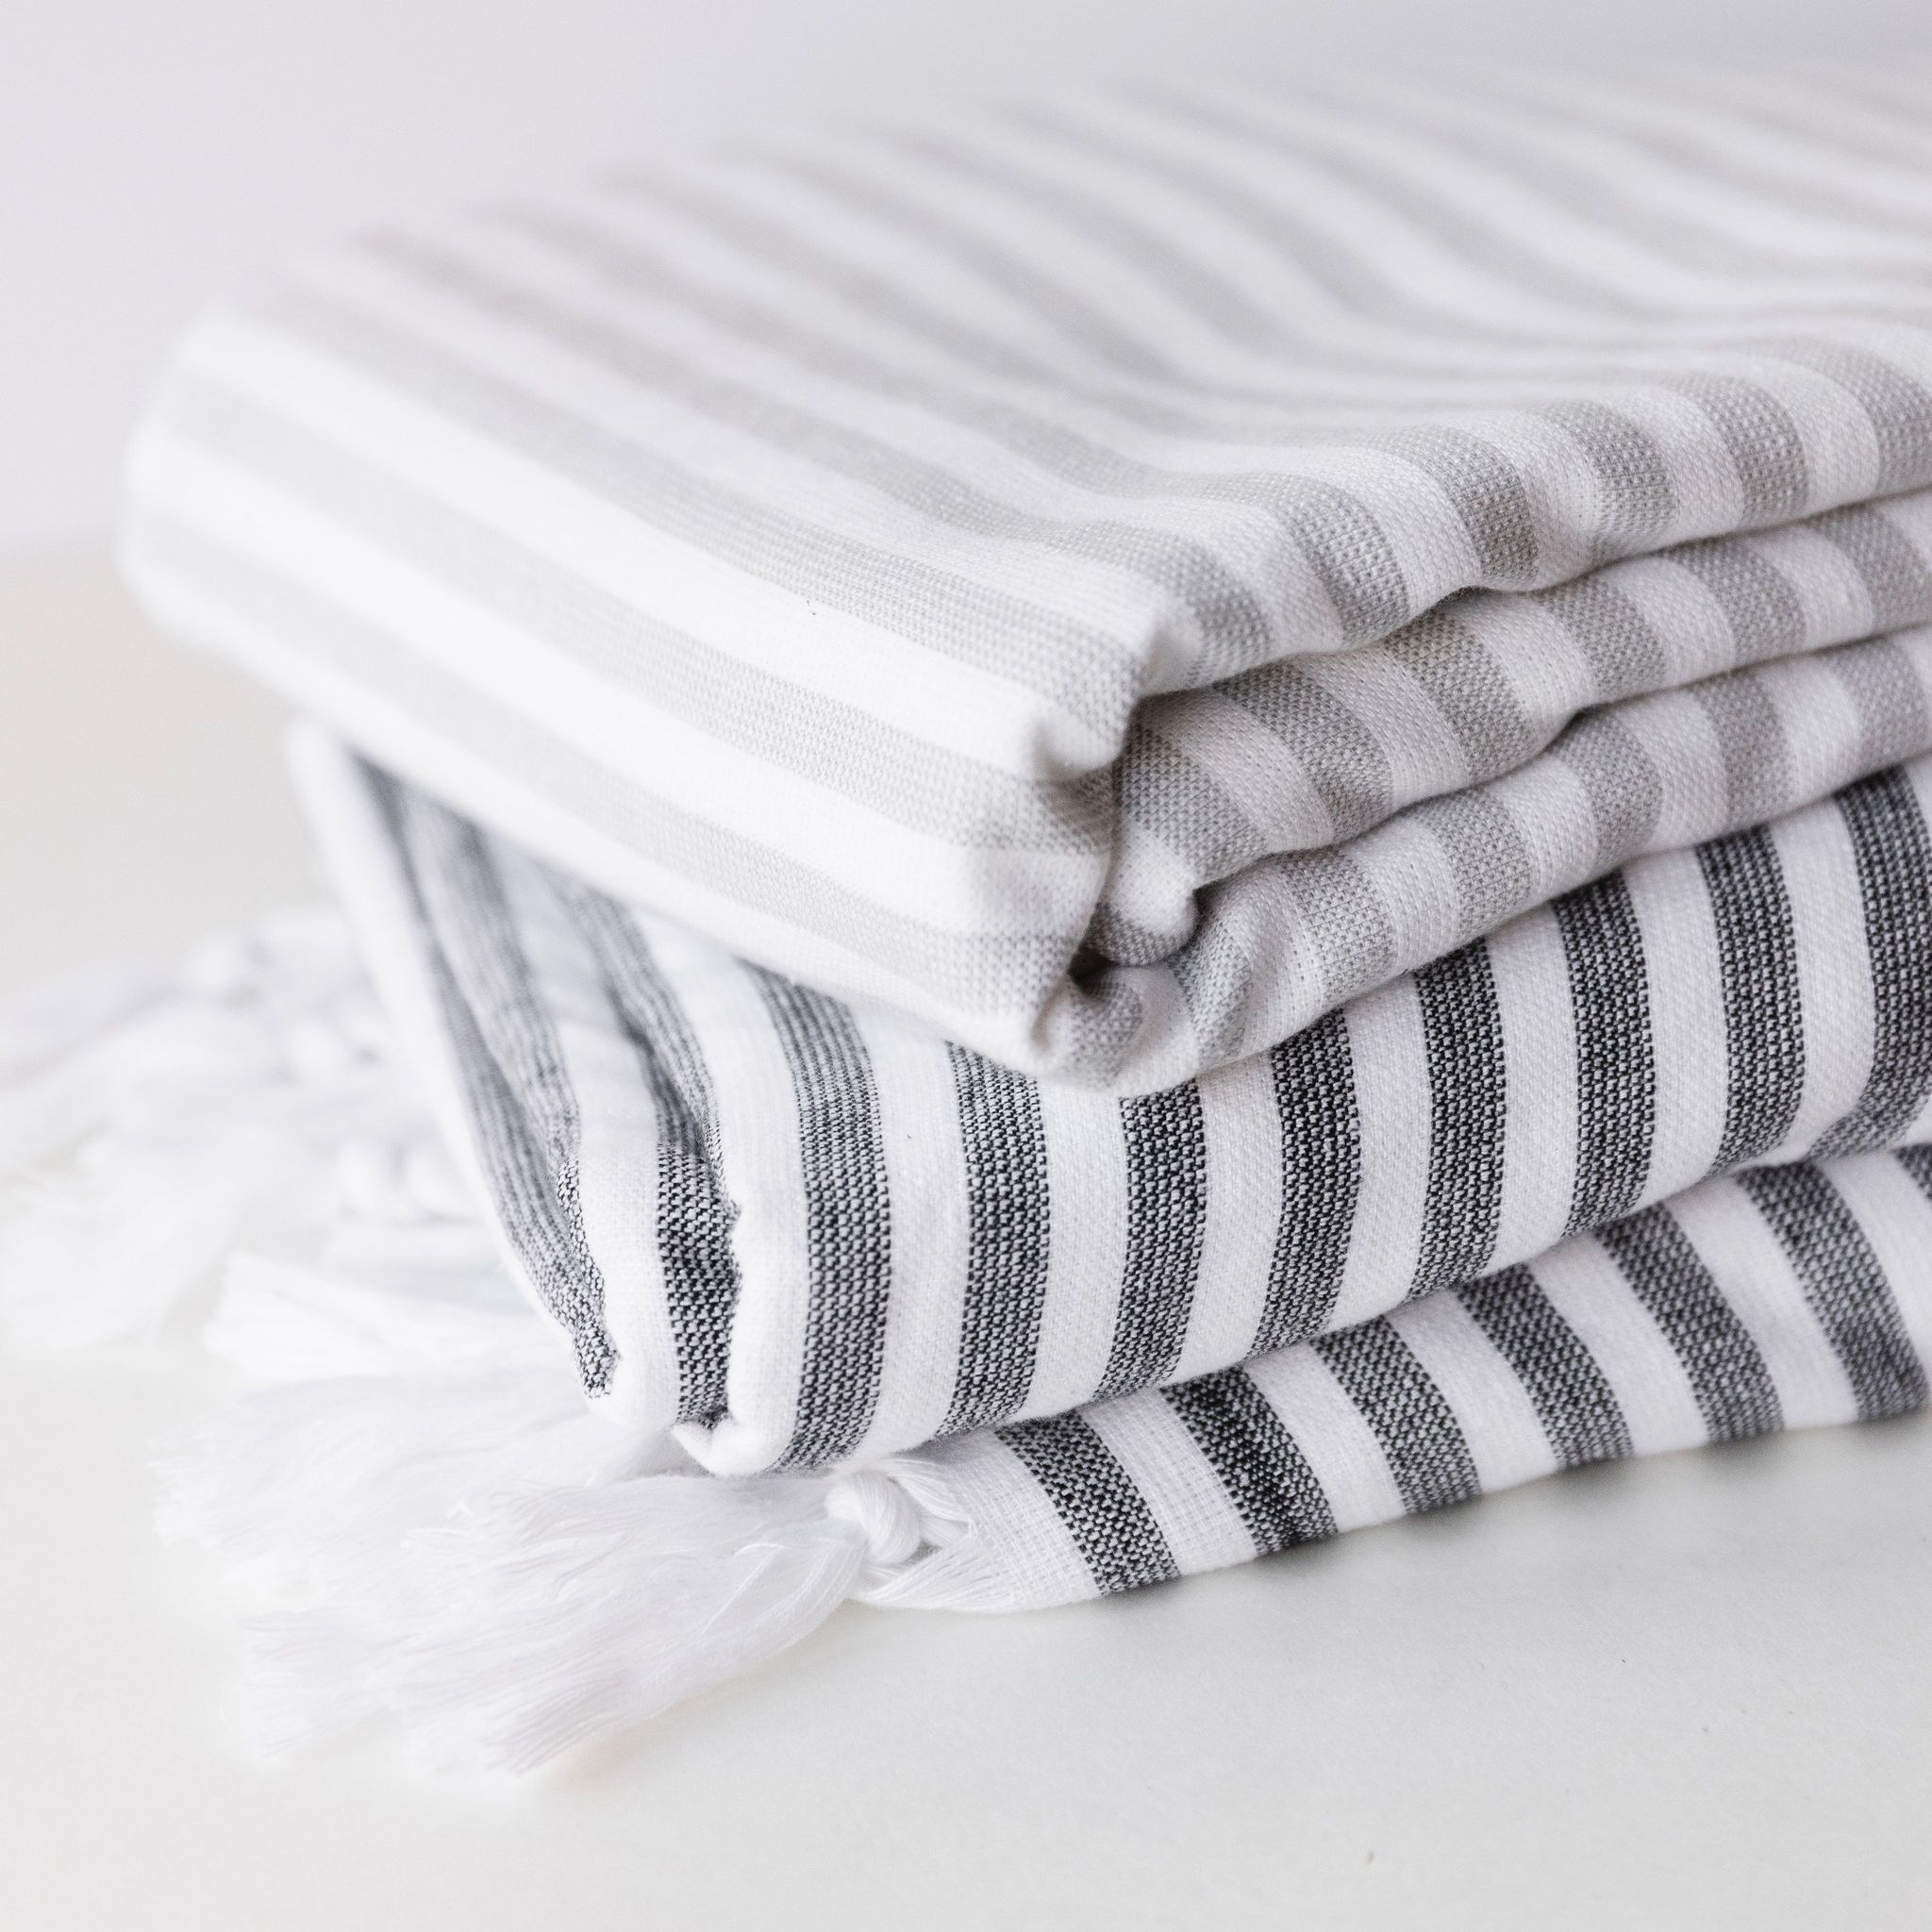 Wheaton Striped Linen/Cotton Napkins